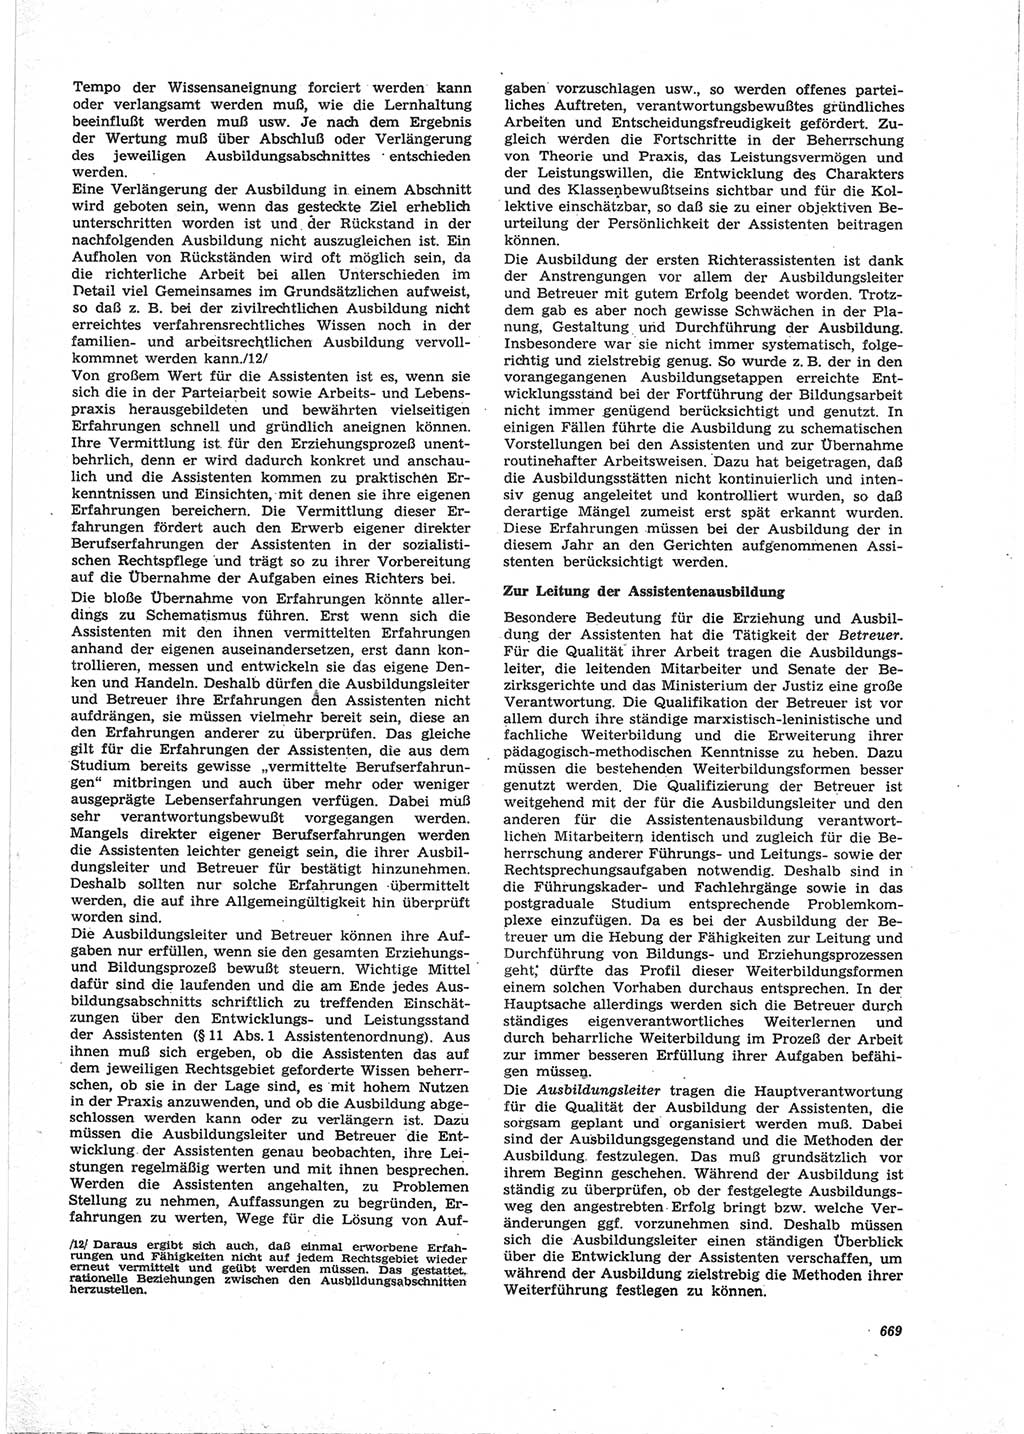 Neue Justiz (NJ), Zeitschrift für Recht und Rechtswissenschaft [Deutsche Demokratische Republik (DDR)], 25. Jahrgang 1971, Seite 669 (NJ DDR 1971, S. 669)